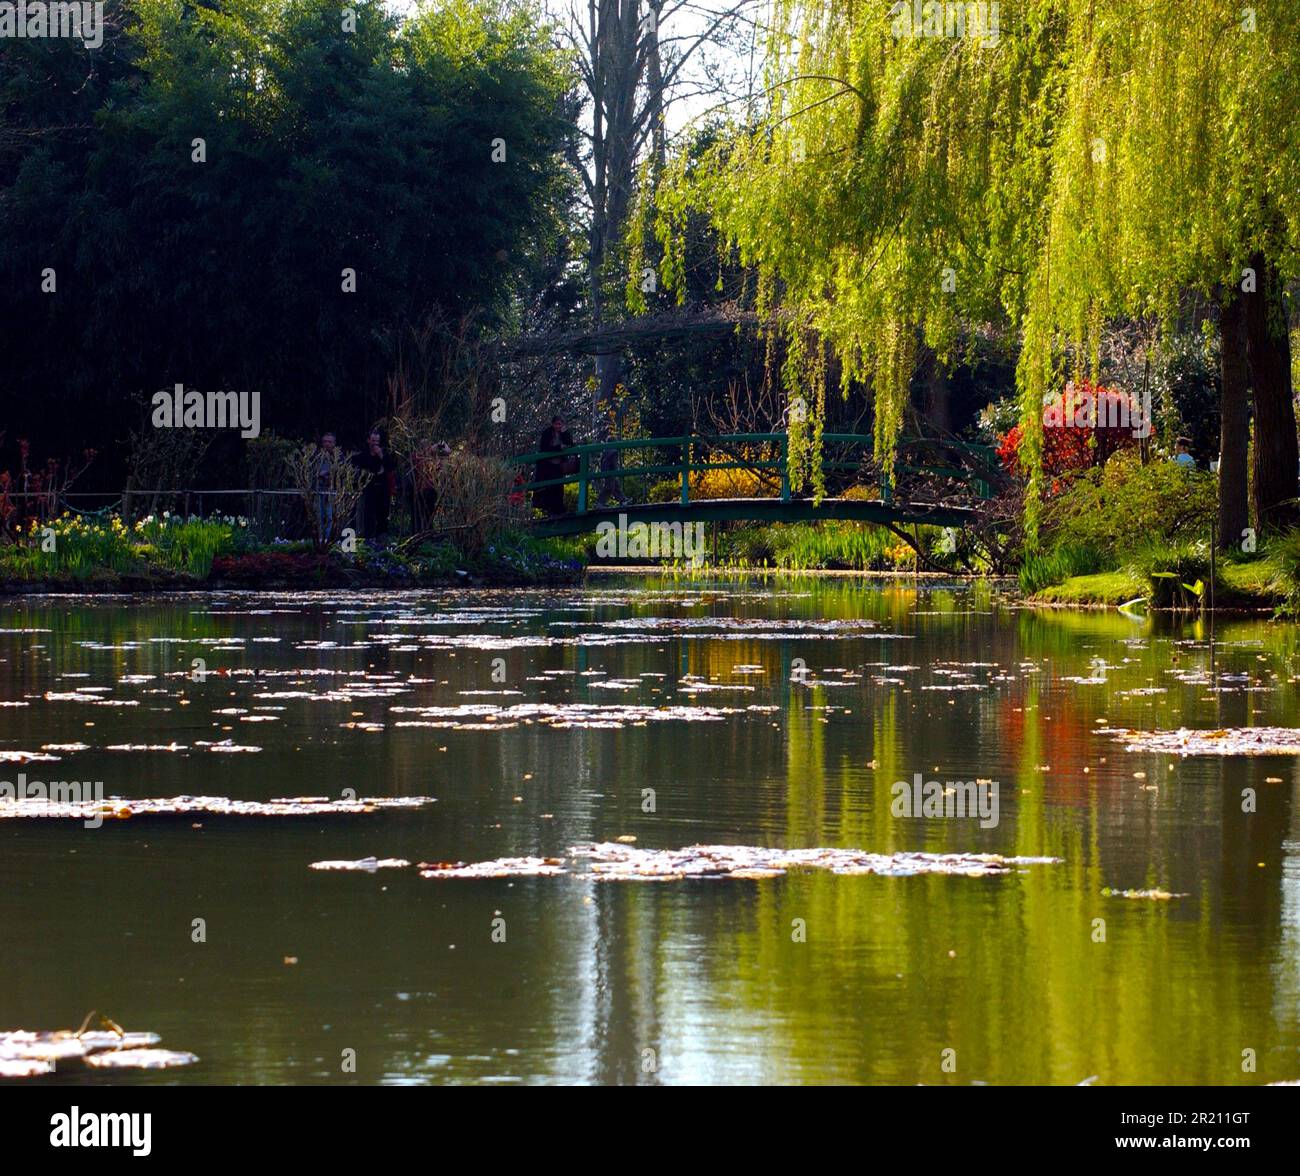 Photo prise au jardin de Monet à Giverny qui a inspiré la série de lilas d'eau et de ponts japonais de Claude Monet. Banque D'Images